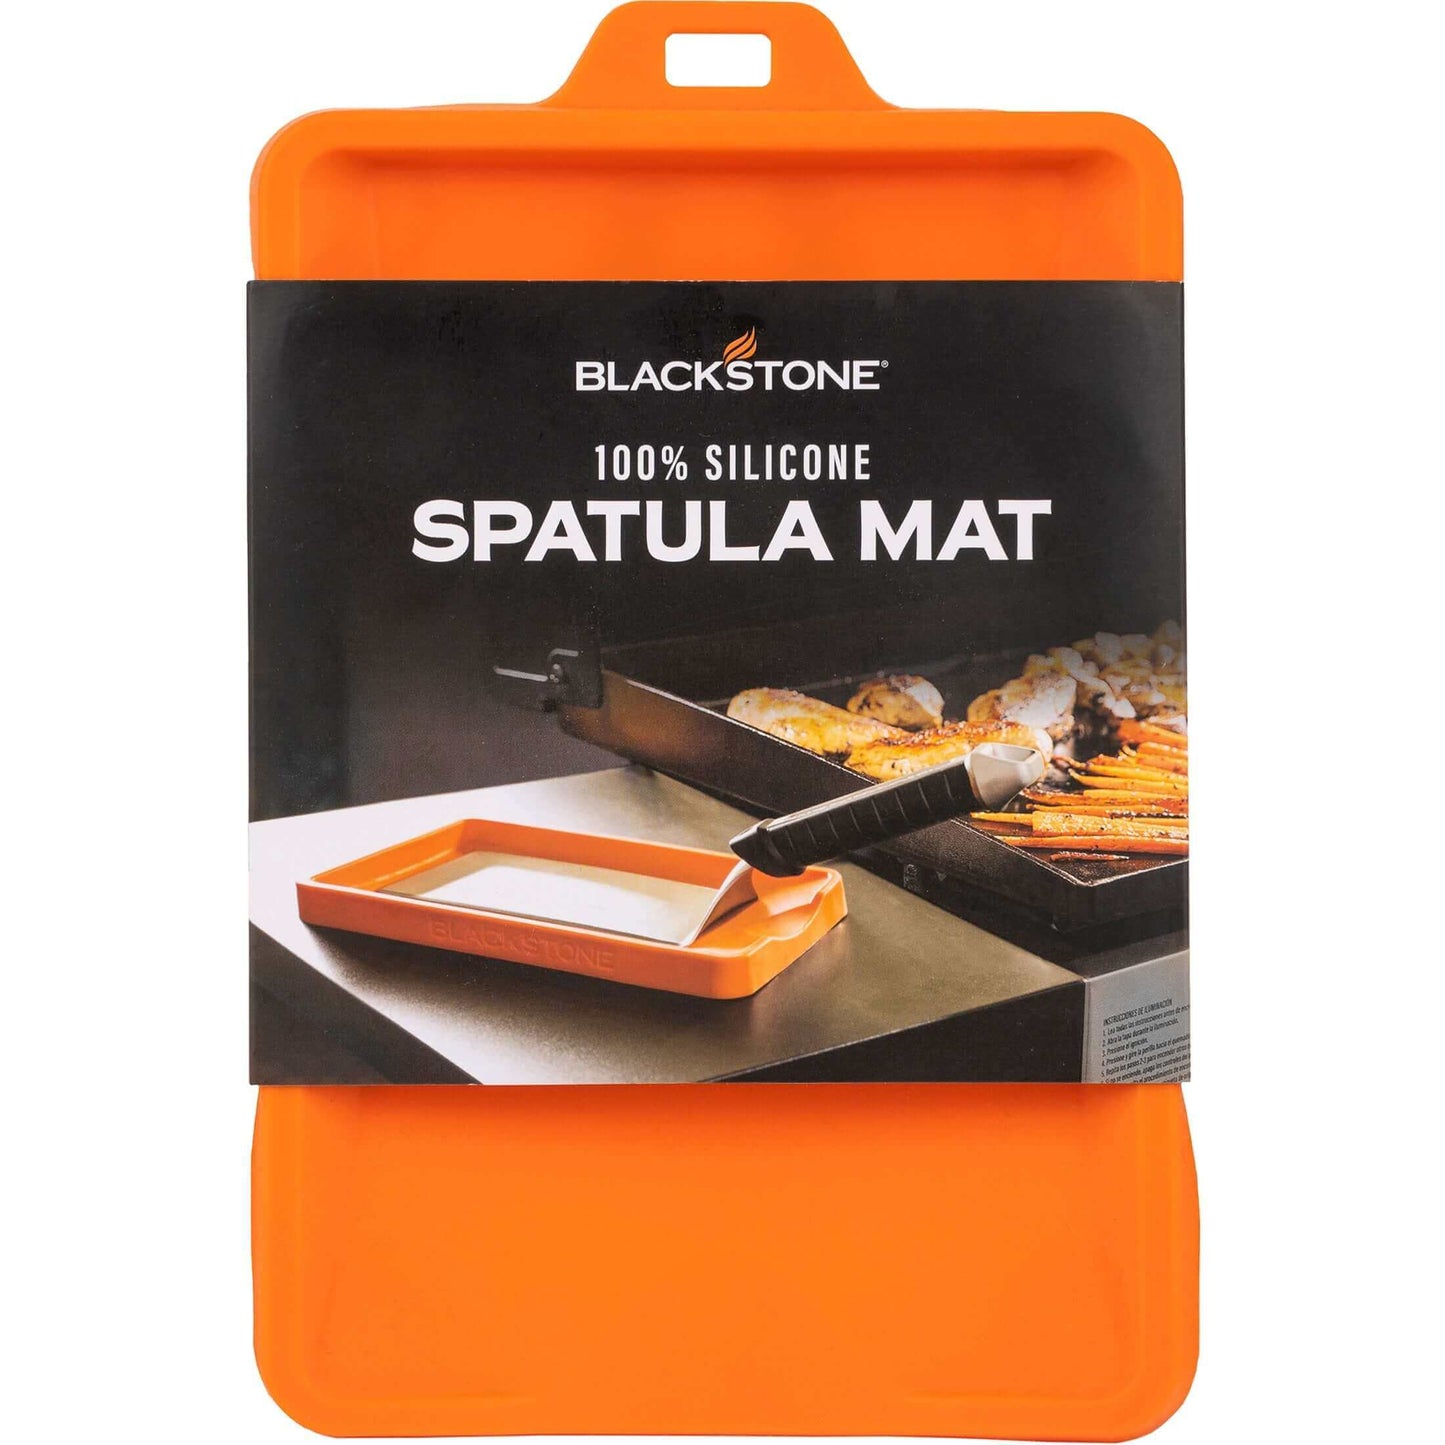 Blackstone 100% silikoninen lastamatto, joka pitää pinnat puhtaina grillauksen aikana, esitettynä kirkkaan oranssissa pakkauksessa.